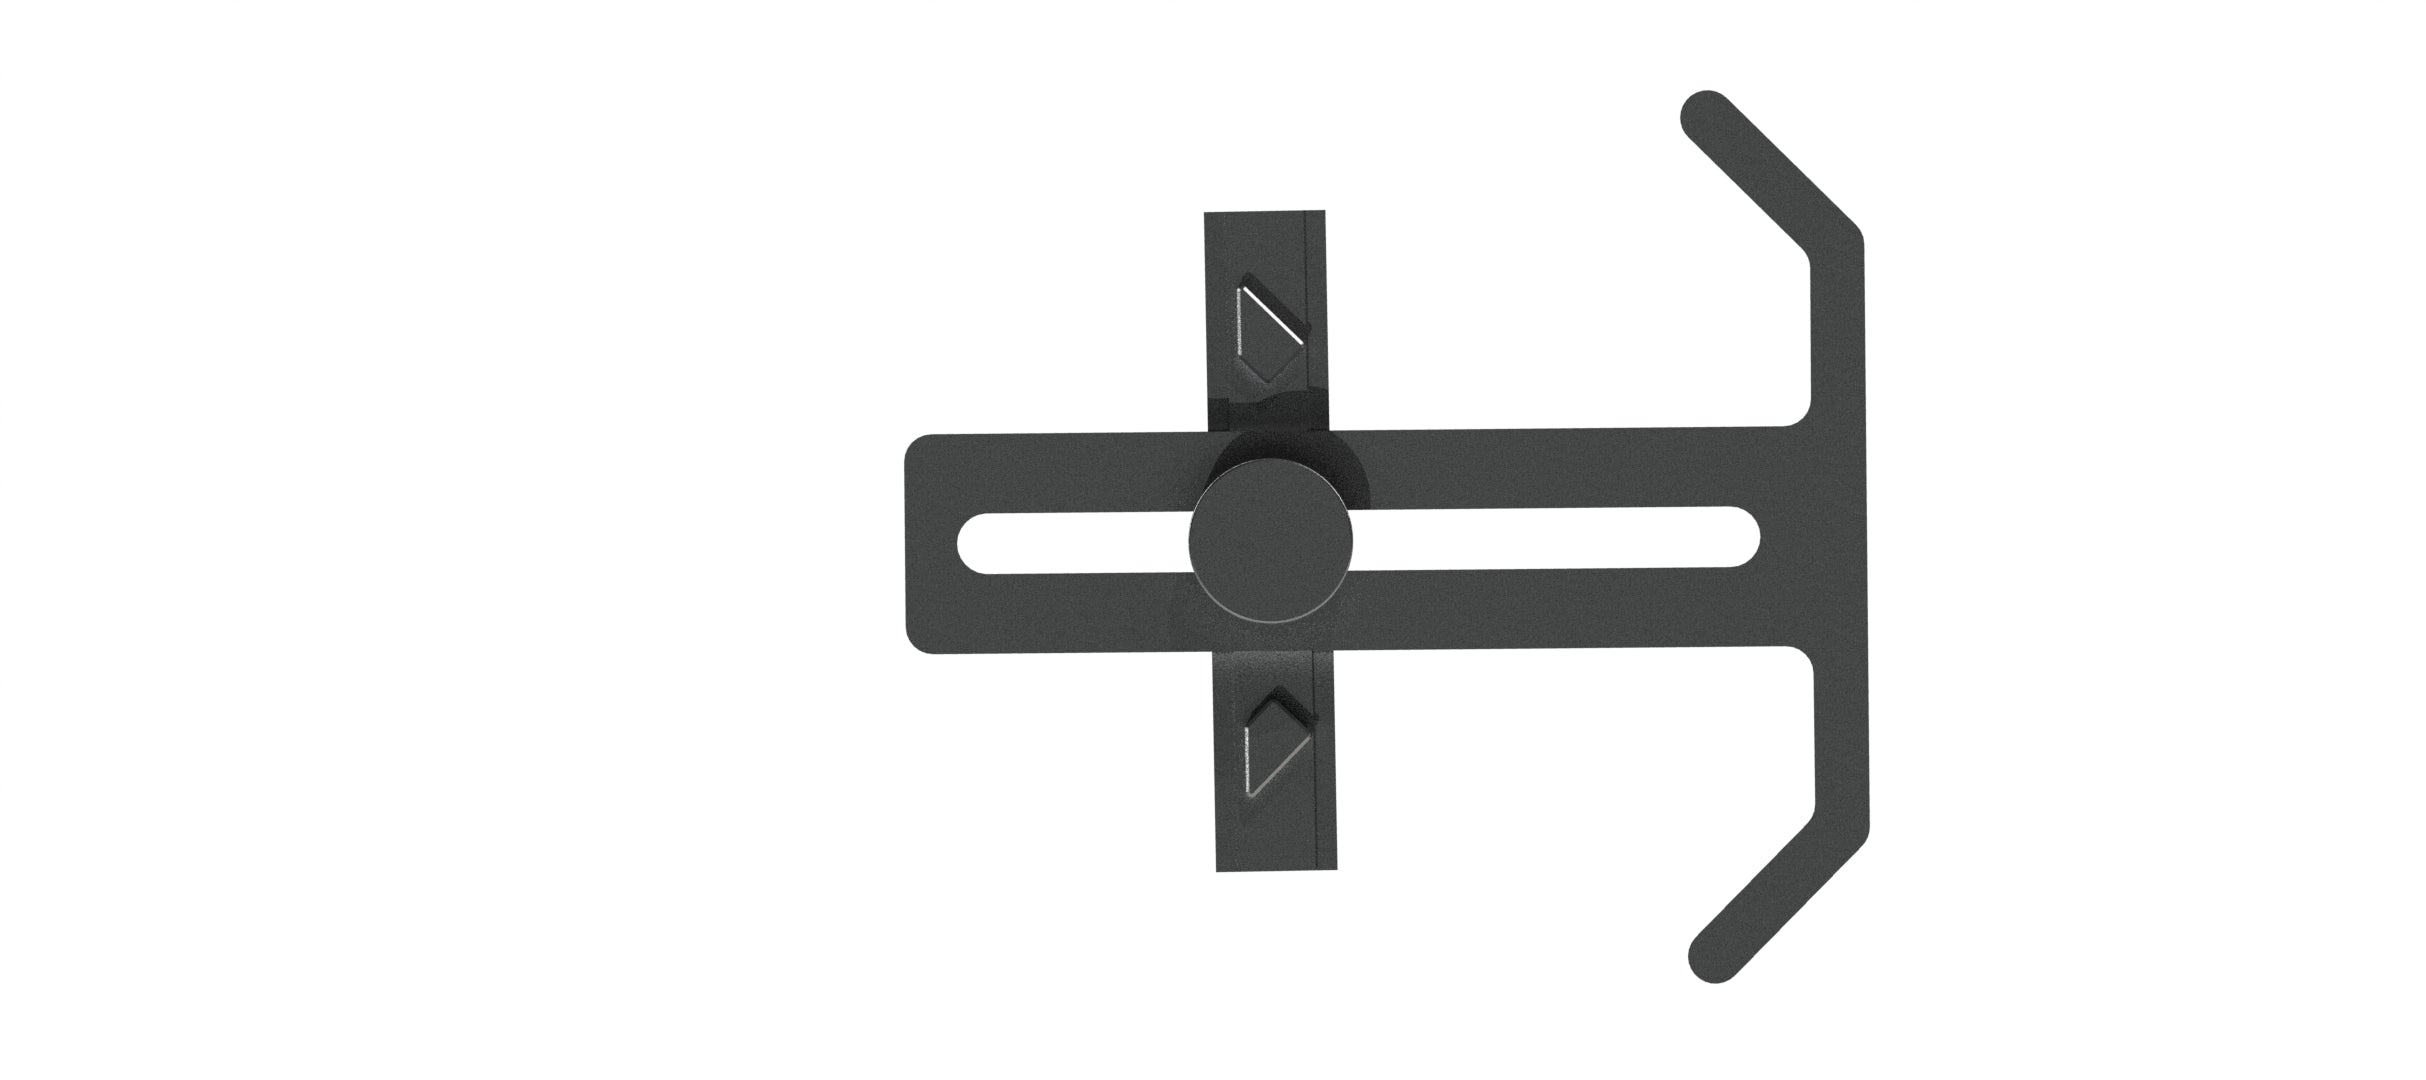 Multi-Angle Swivel Stop Block - Universal T-track Profile Compatible